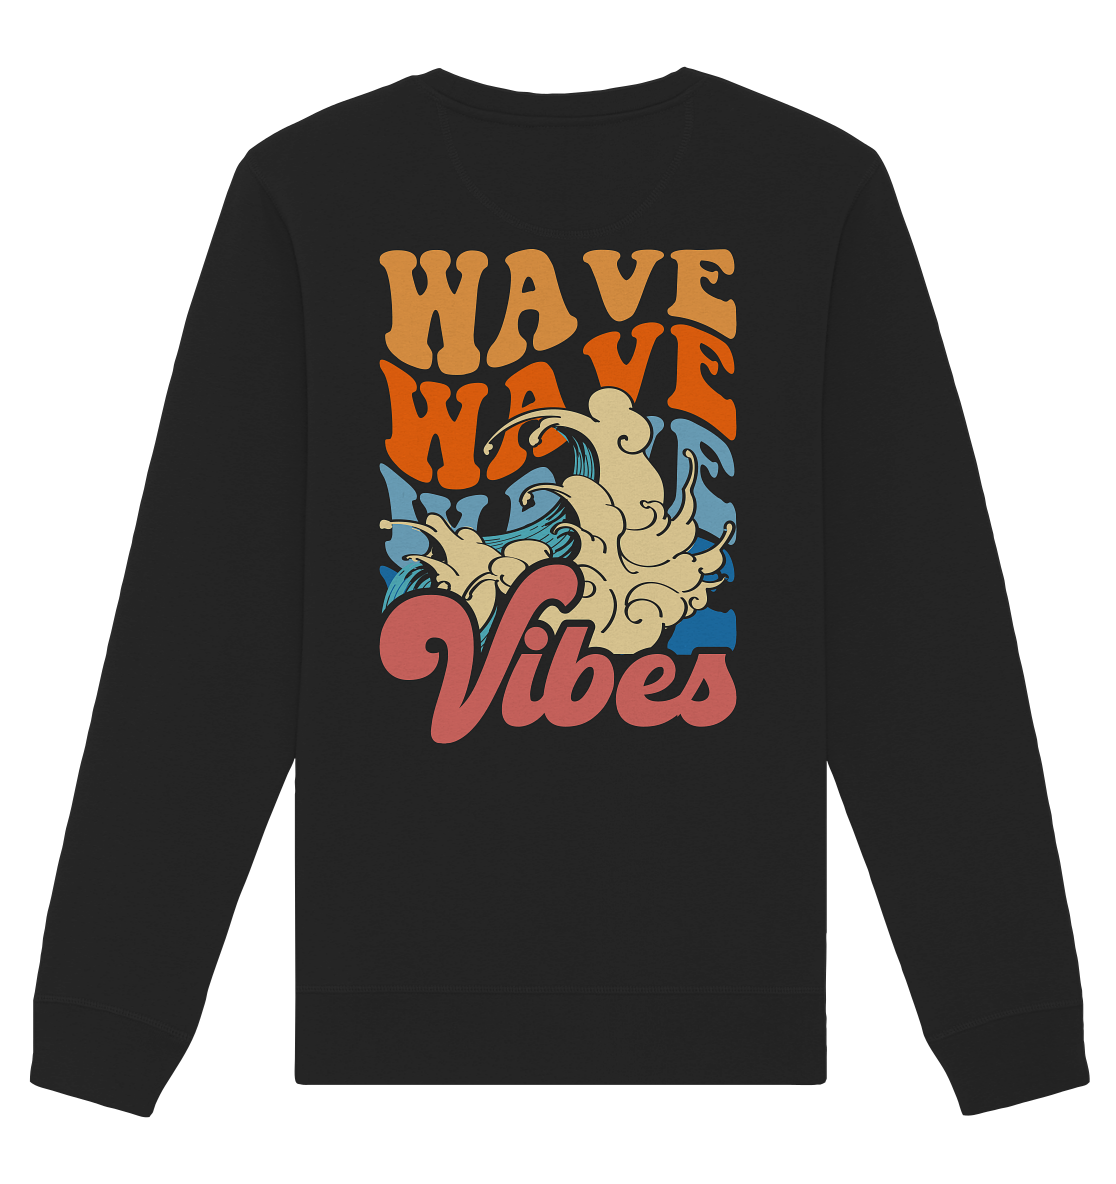 Wavy Vibes - Organic Basic Unisex Sweatshirt